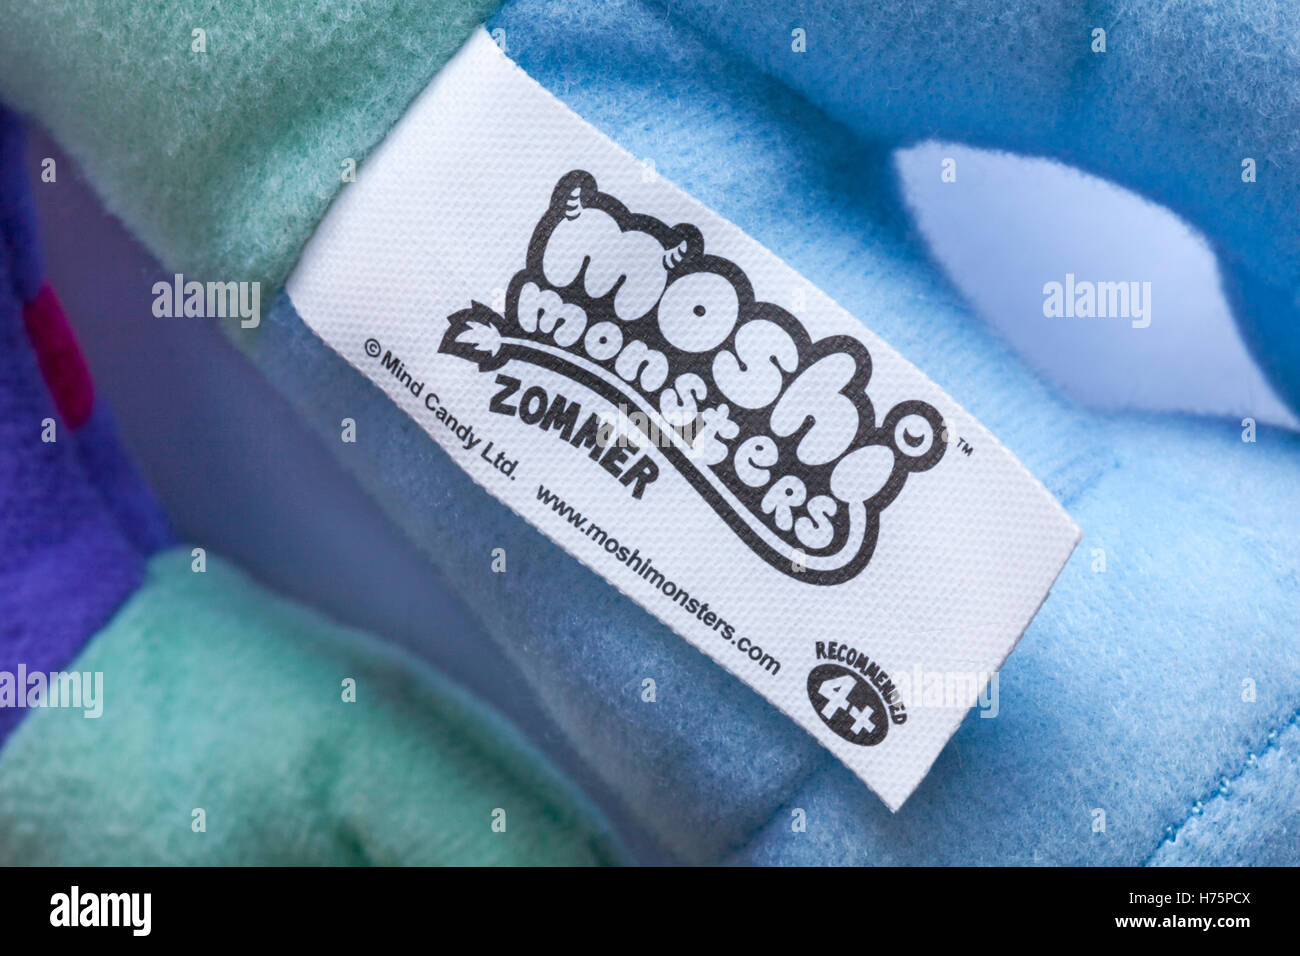 Label de Moshi Monsters zommer adorable en peluche douce Banque D'Images